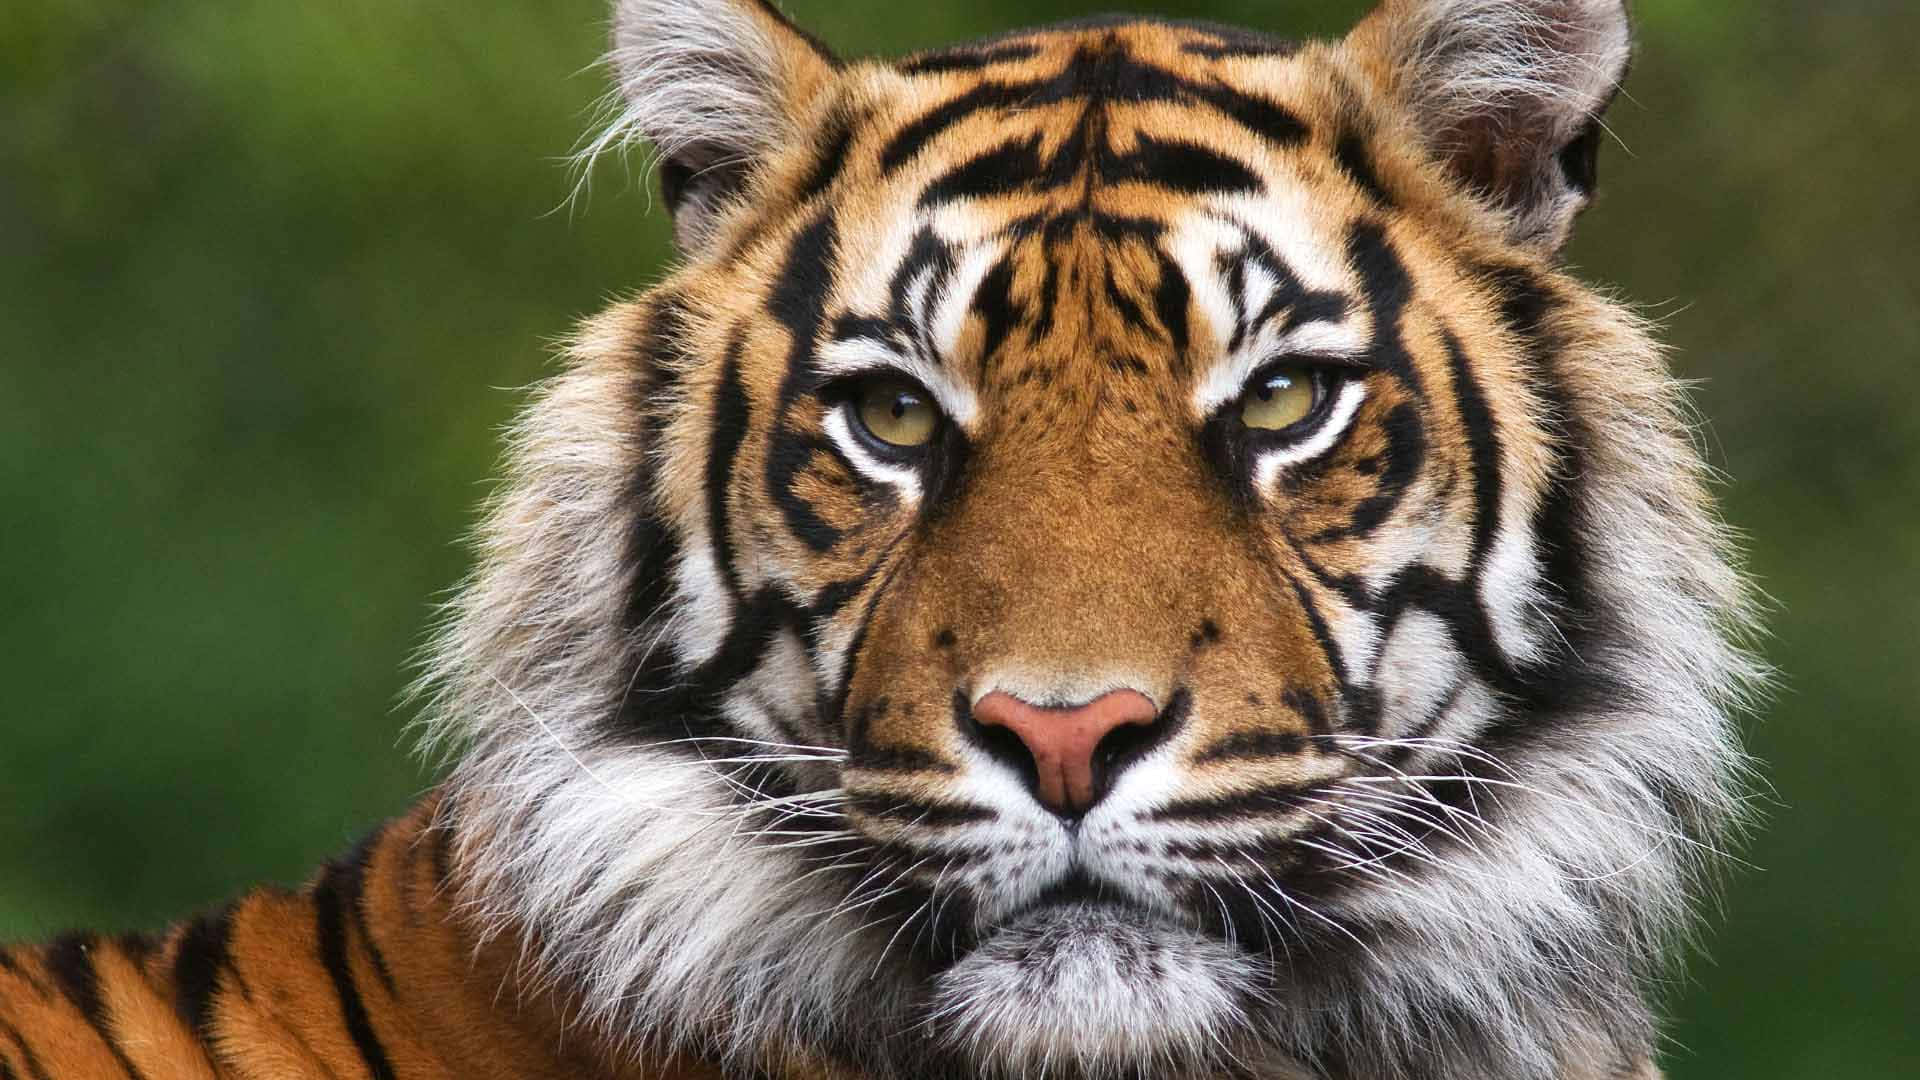 Majestic Tiger Gracing its Surroundings with Regal Grandeur